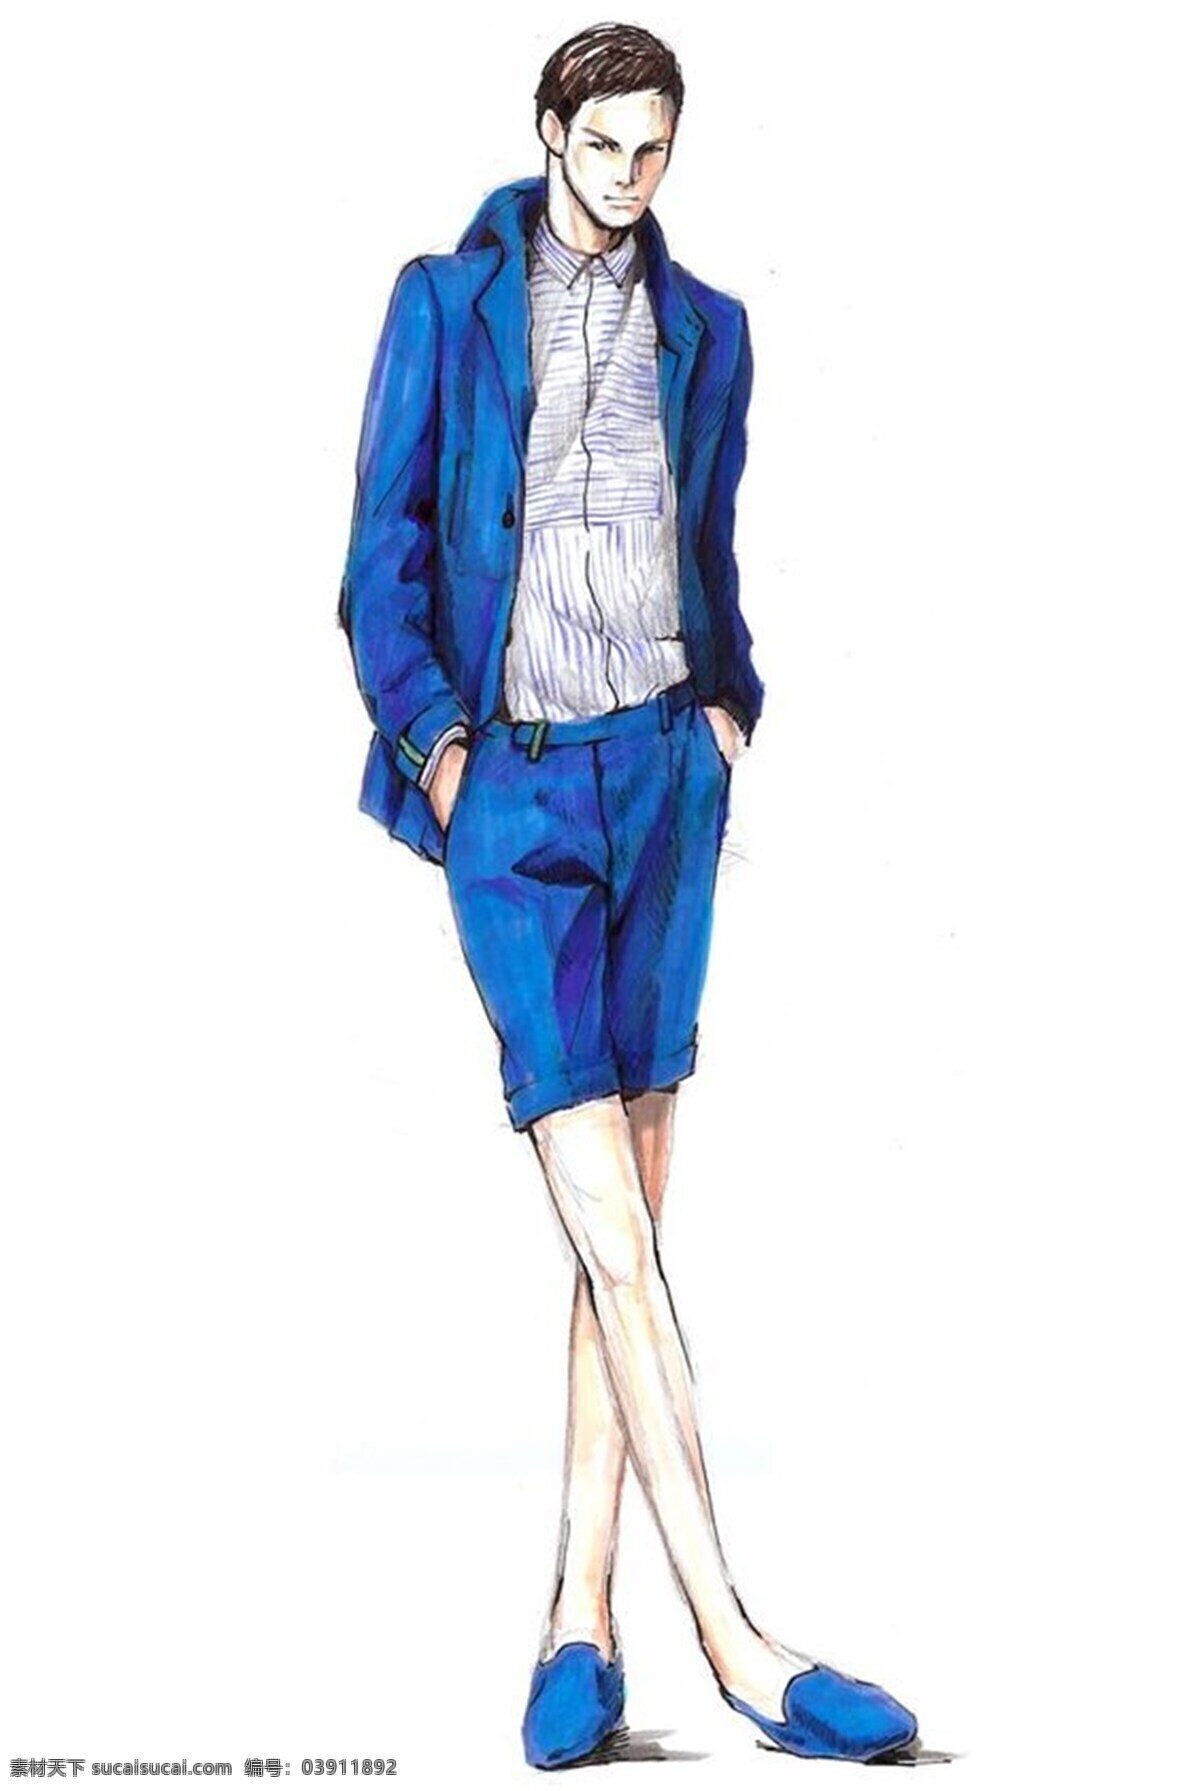 蓝色短裤 蓝色外套 蓝色鞋子 男装 休闲时尚 蓝色 外套 效果图 深灰色内搭